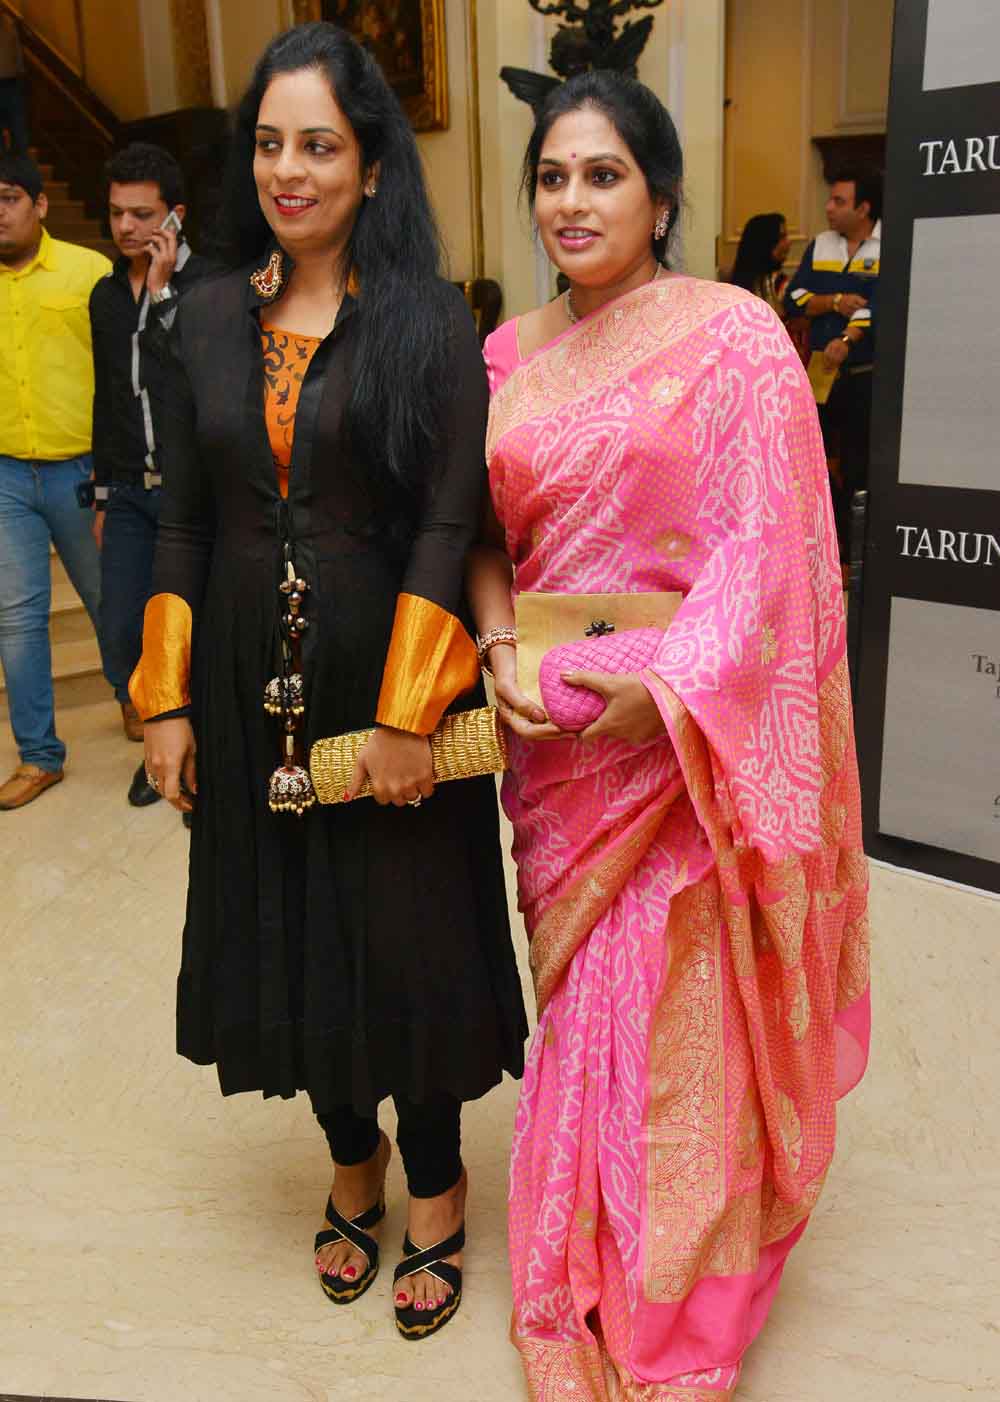 Tarun tahiliani fashion show at taj krishna photos